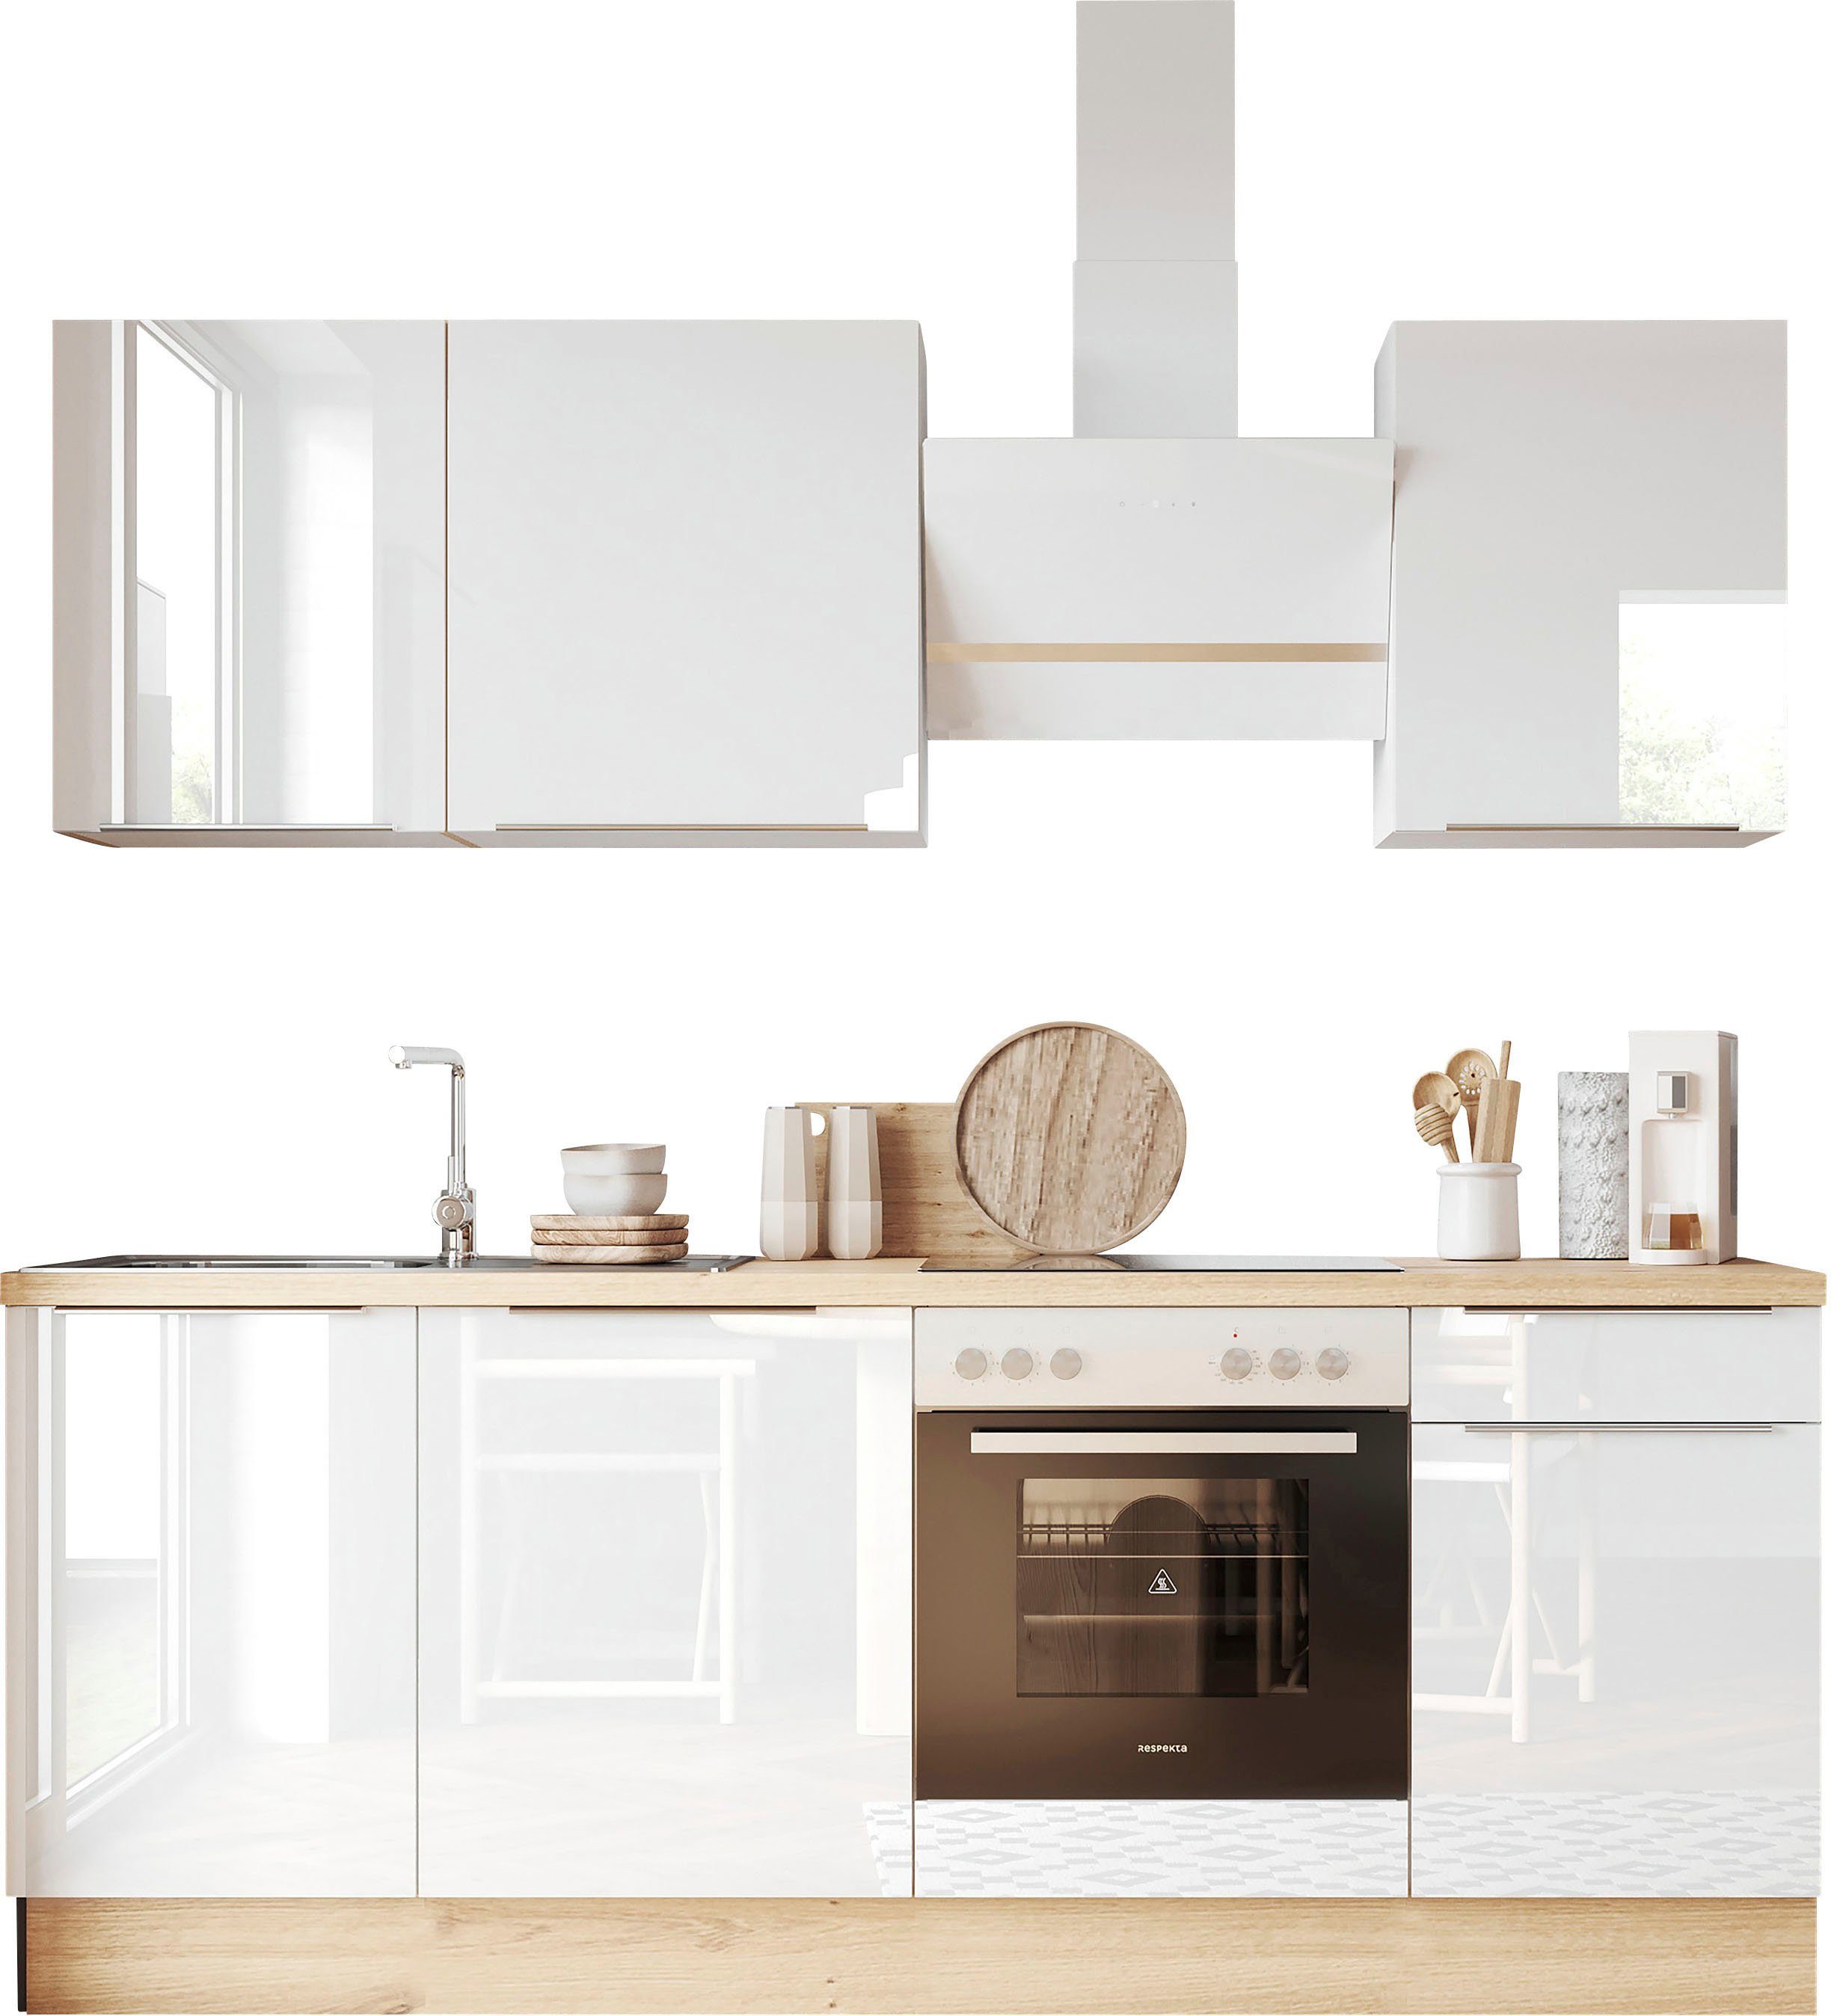 RESPEKTA Küchenzeile Safado aus der Serie Marleen, Breite 220 cm, hochwertige  Ausstattung wie Soft Close Funktion | Küchenzeilen mit Geräten